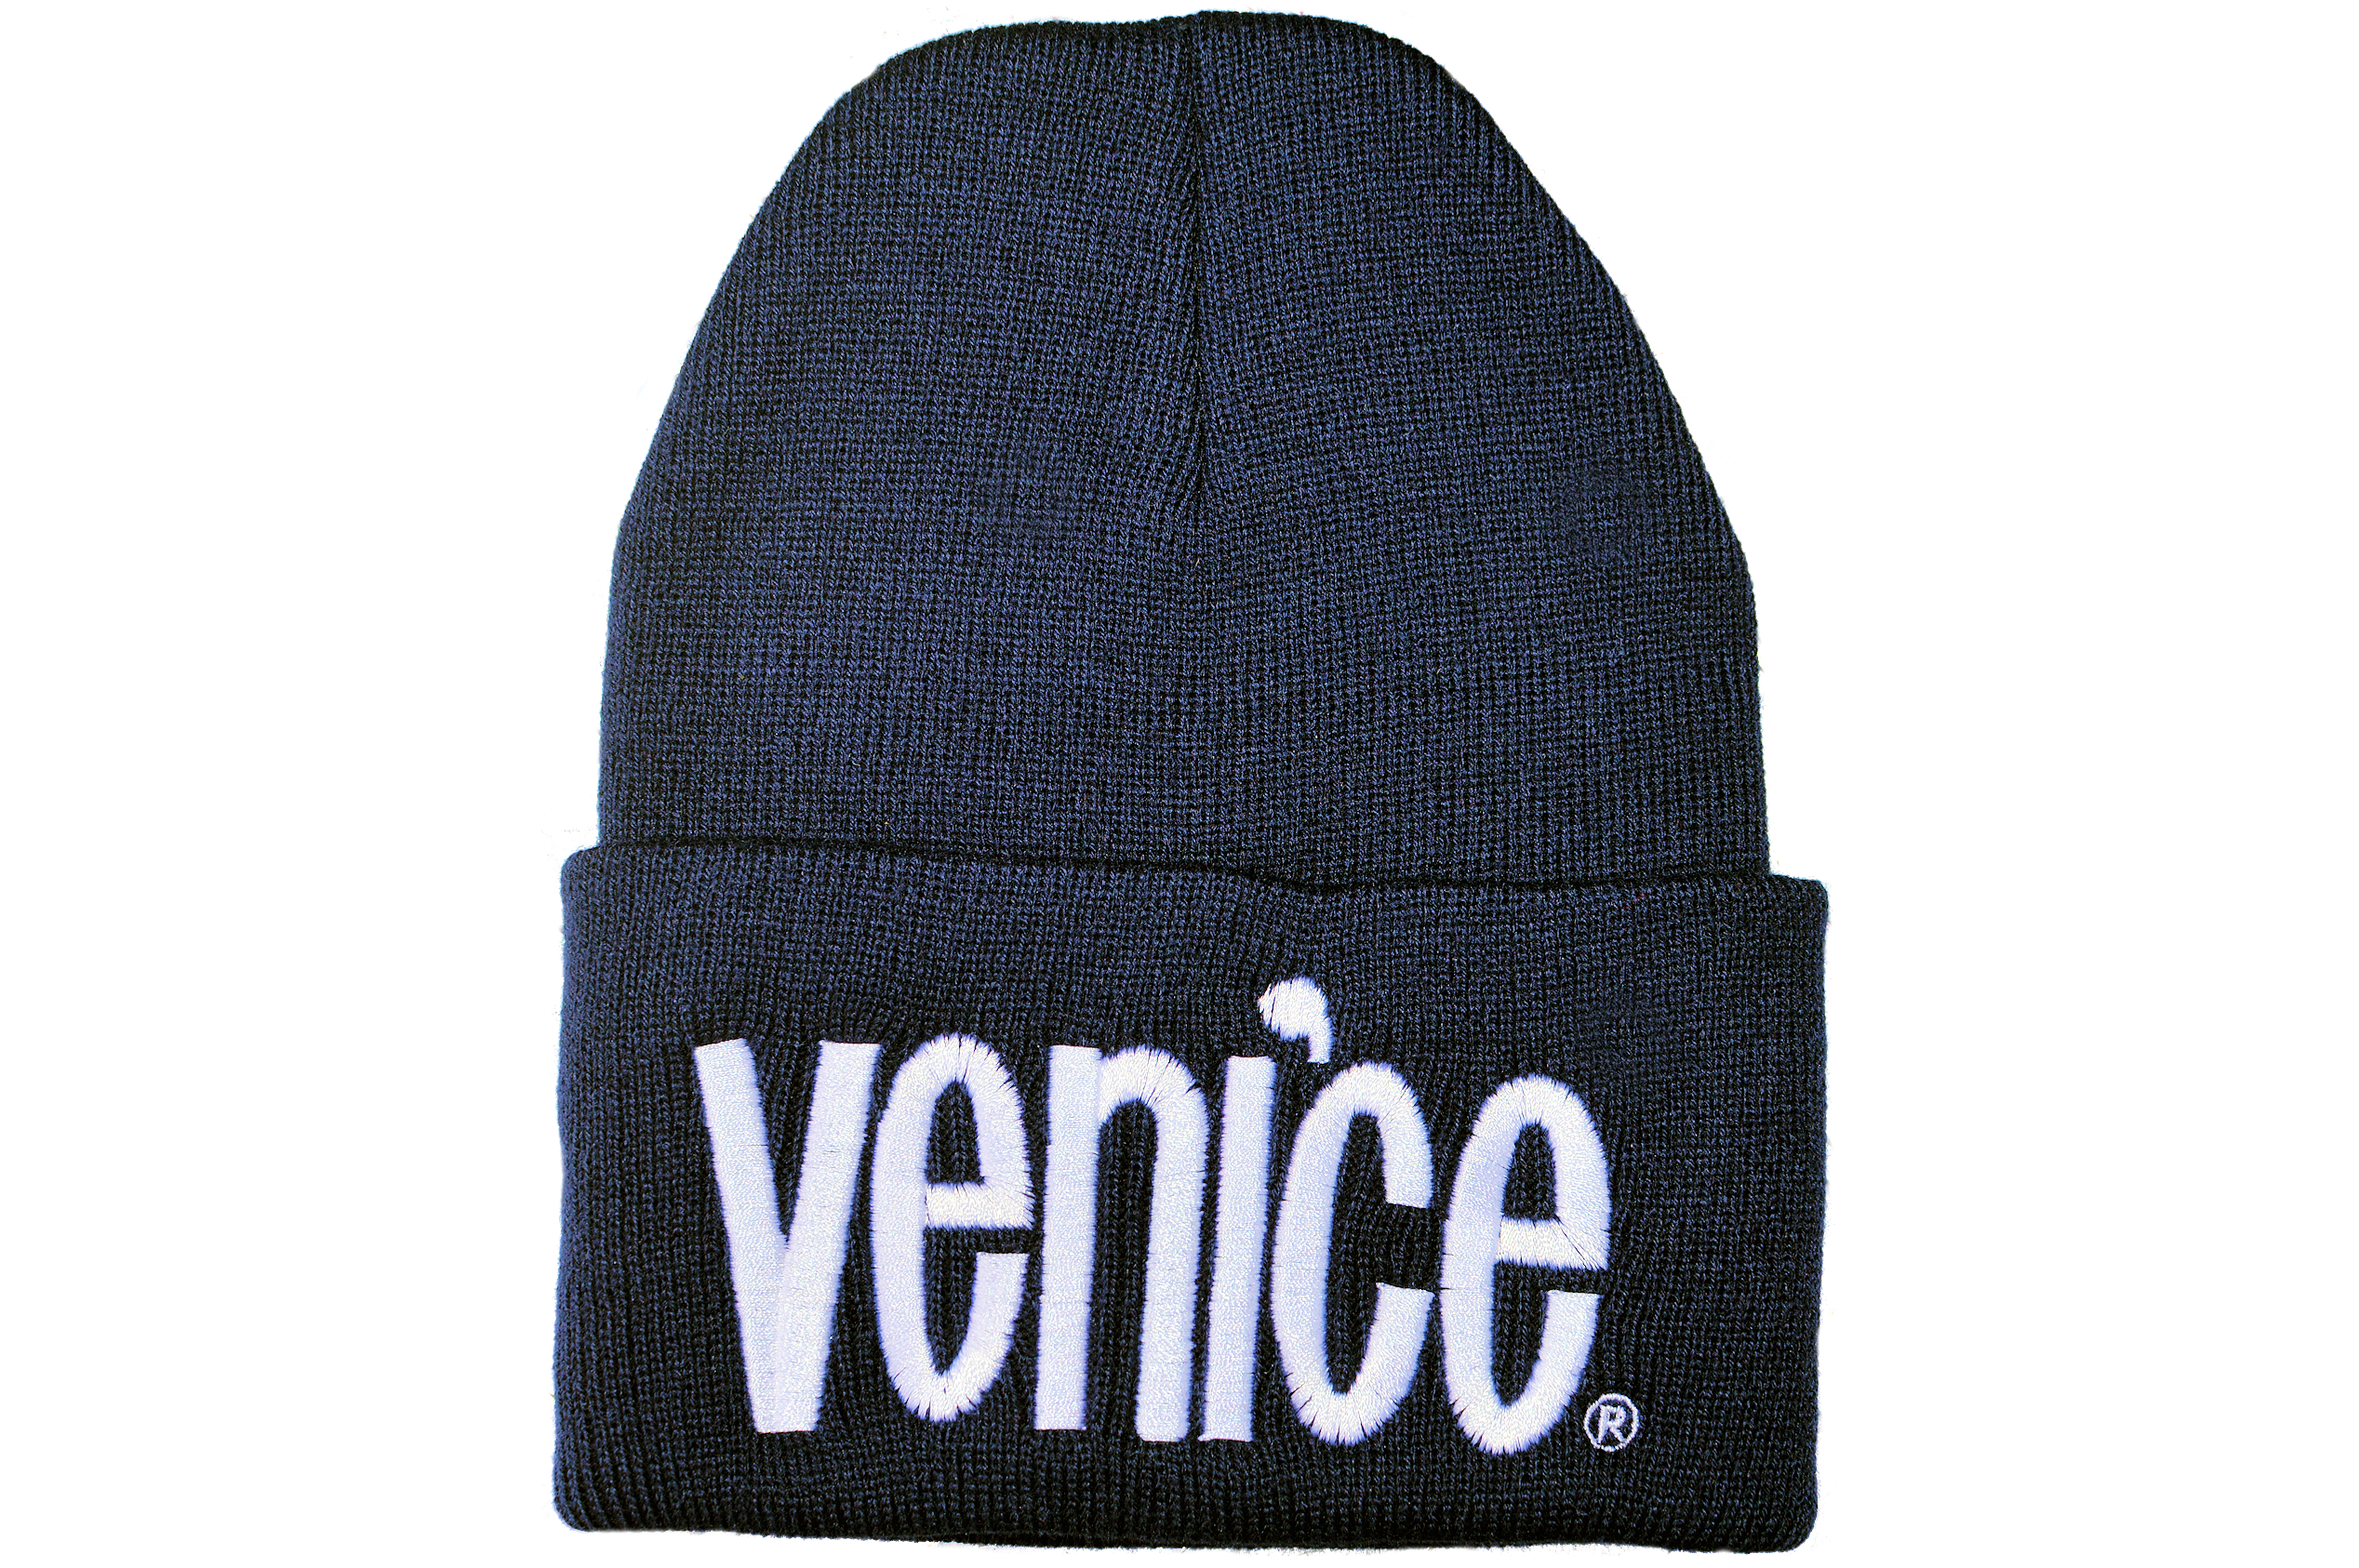 Venice Beanie